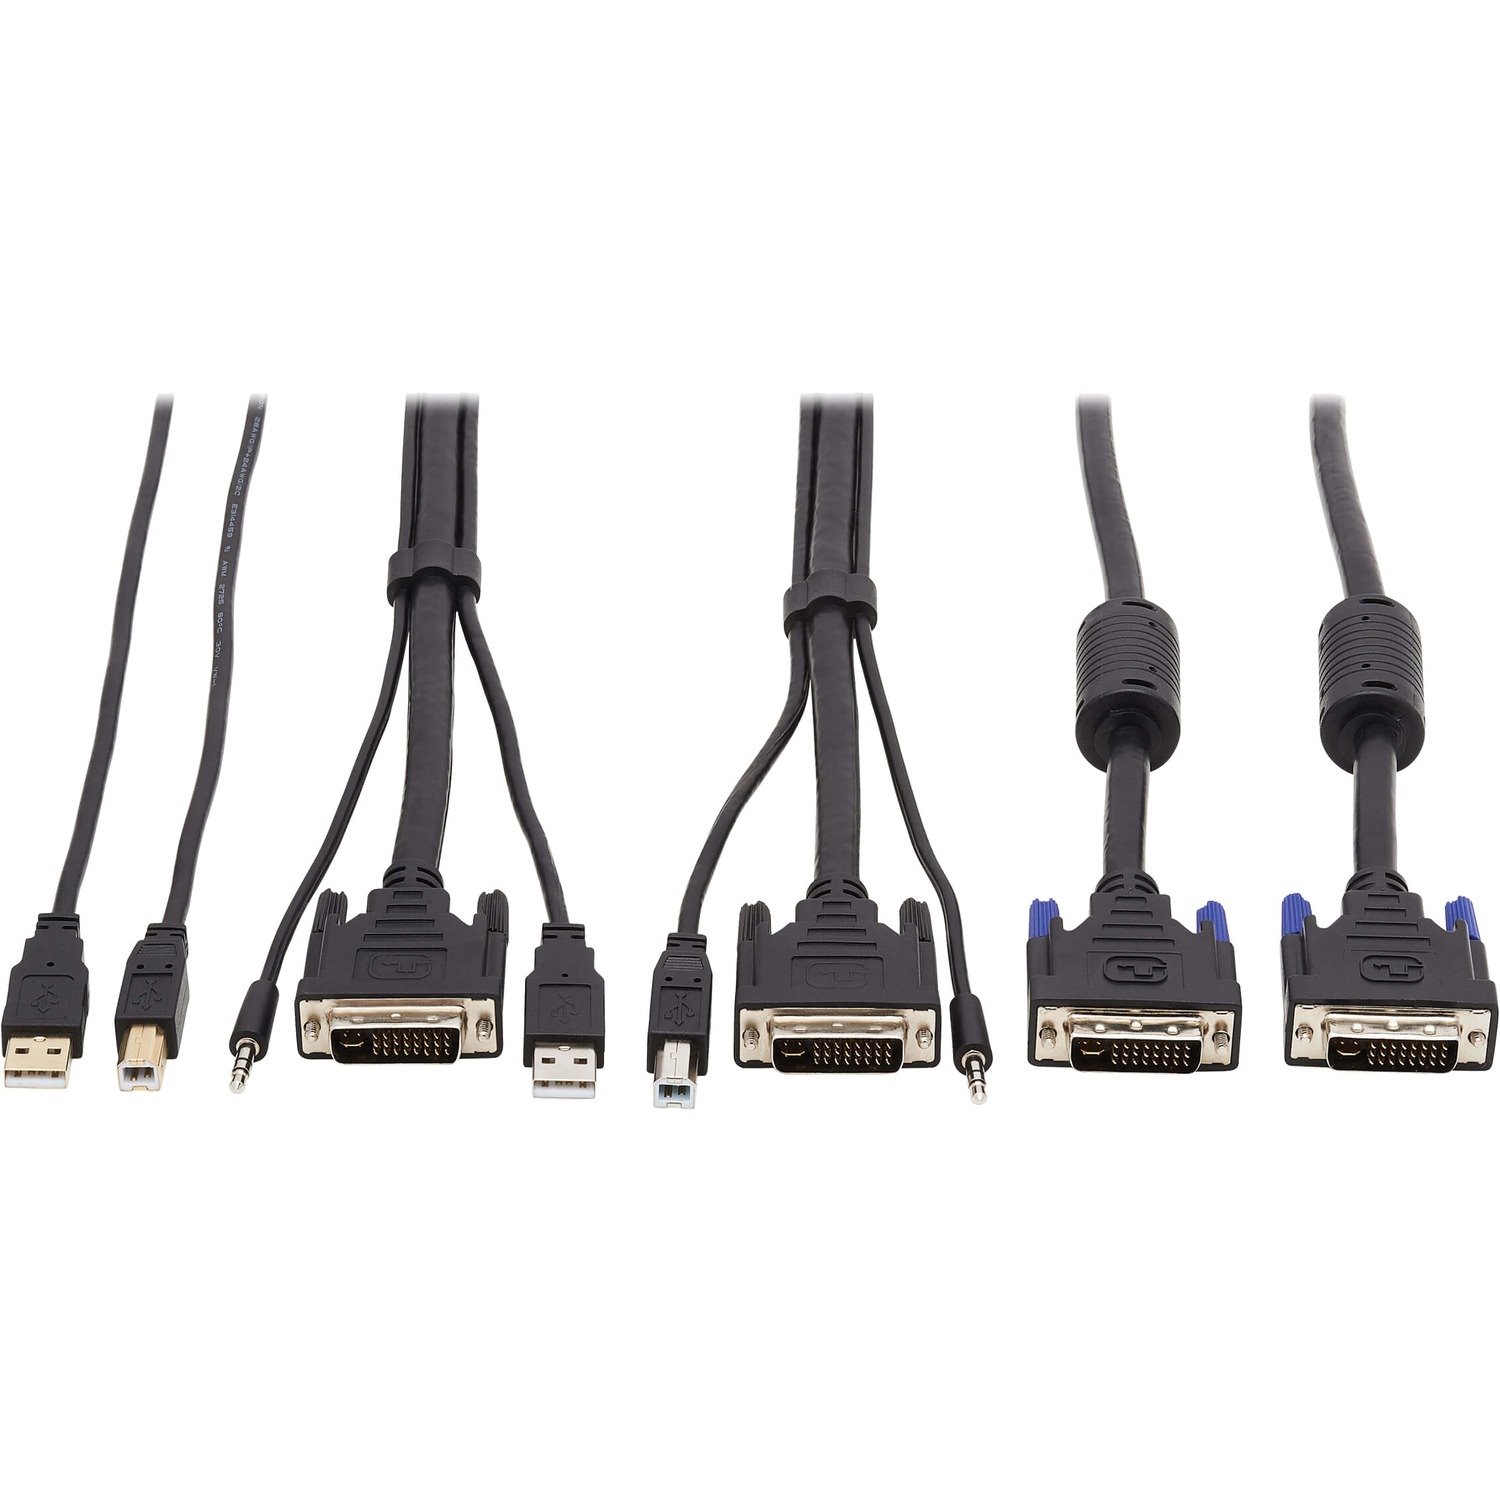 Tripp Lite by Eaton DVI KVM Cable Kit - DVI, USB, 3.5 mm Audio (3xM/3xM) + USB (M/M) + DVI (M/M), 10 ft. (3.05 m)